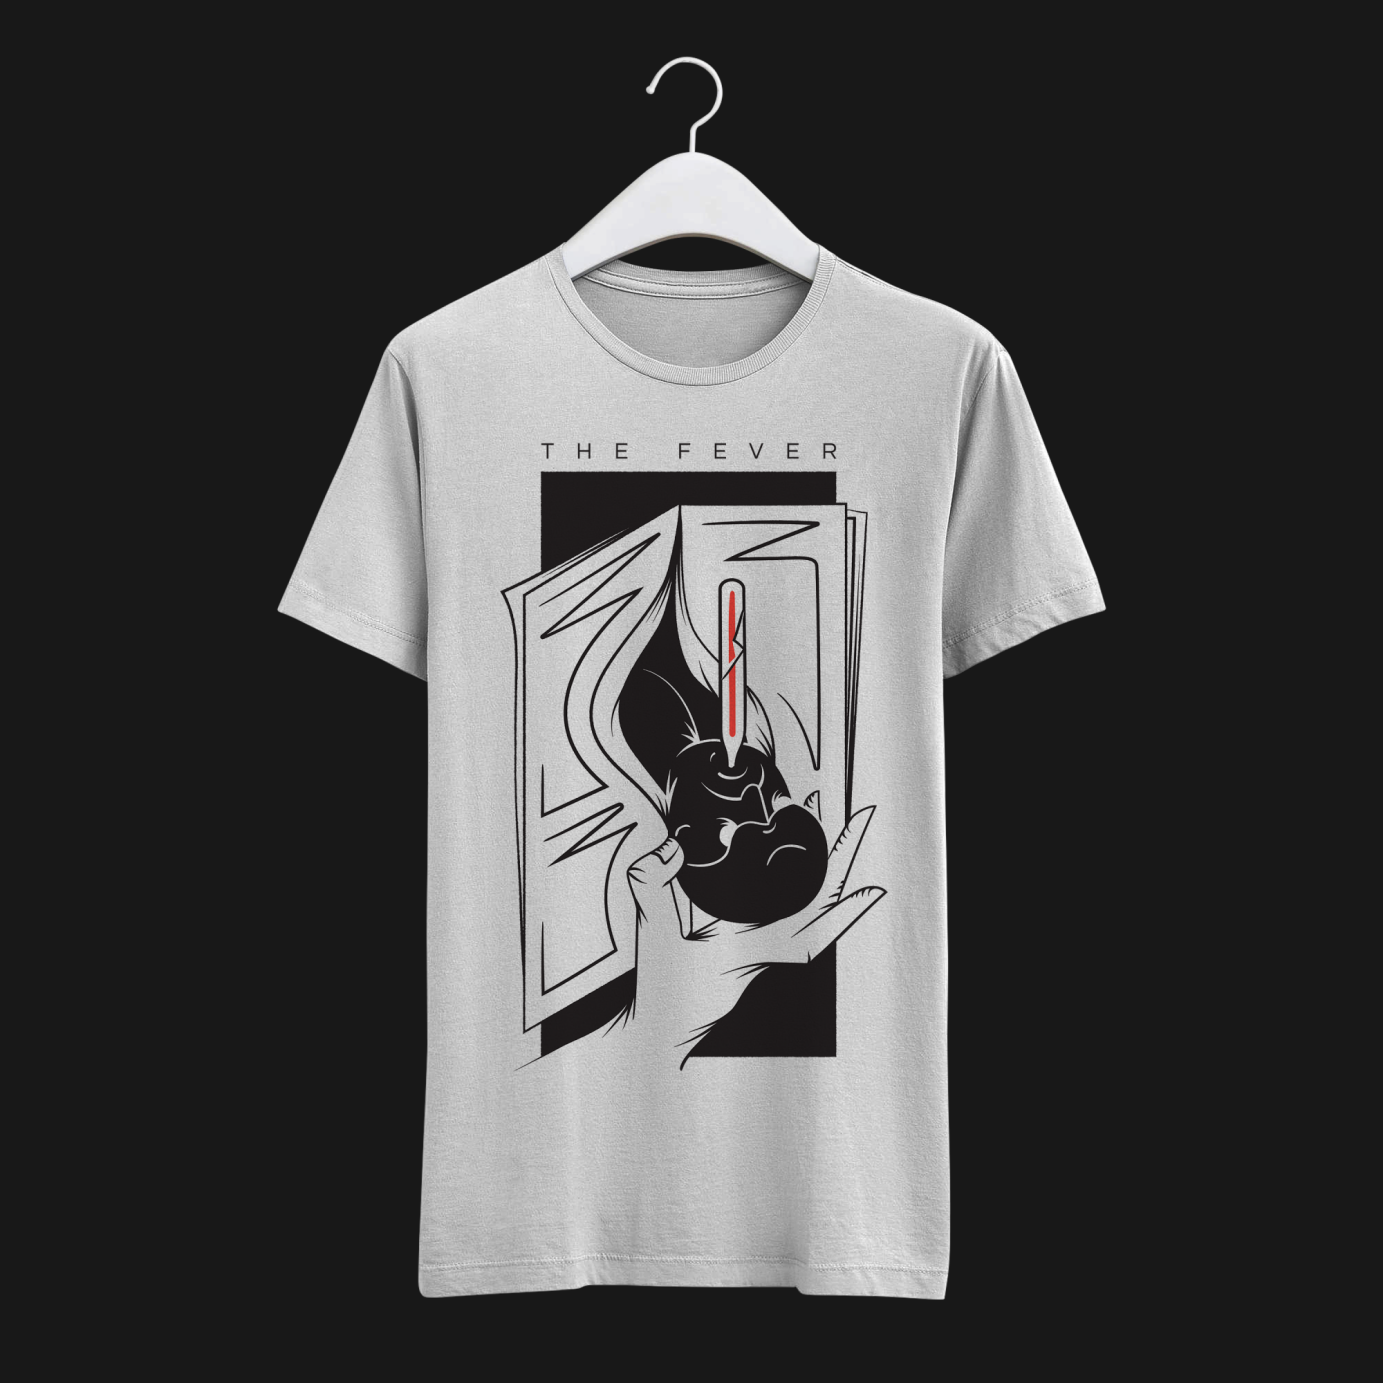 T-shirt merch design